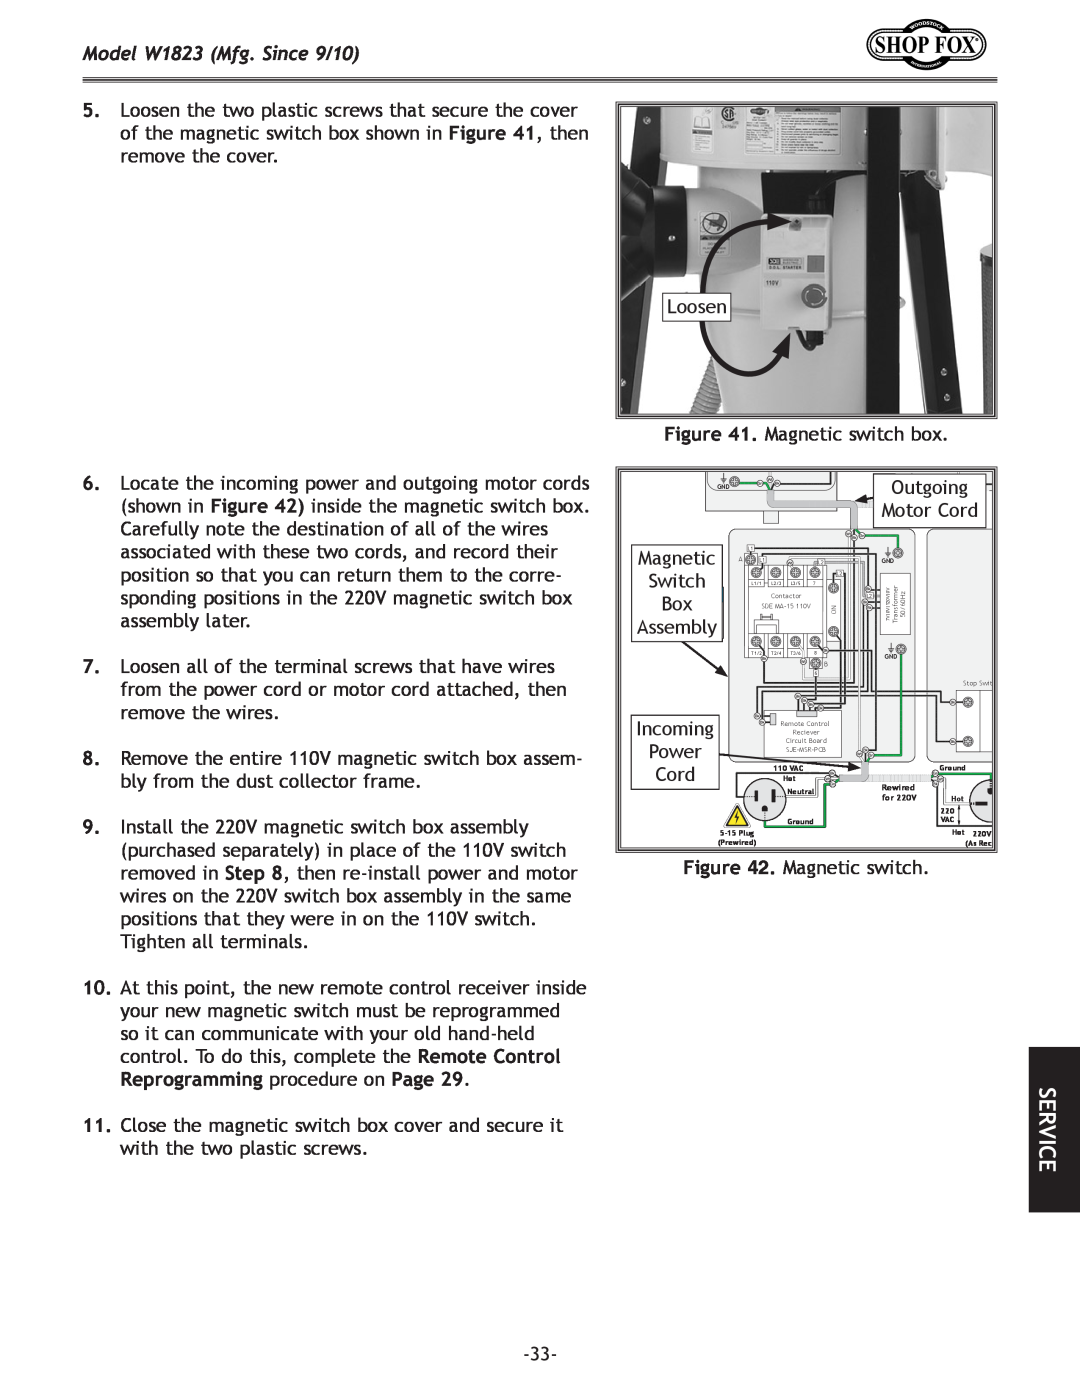 Woodstock manual Model W1823 Mfg. Since 9/10, Loosen . Magnetic switch box 